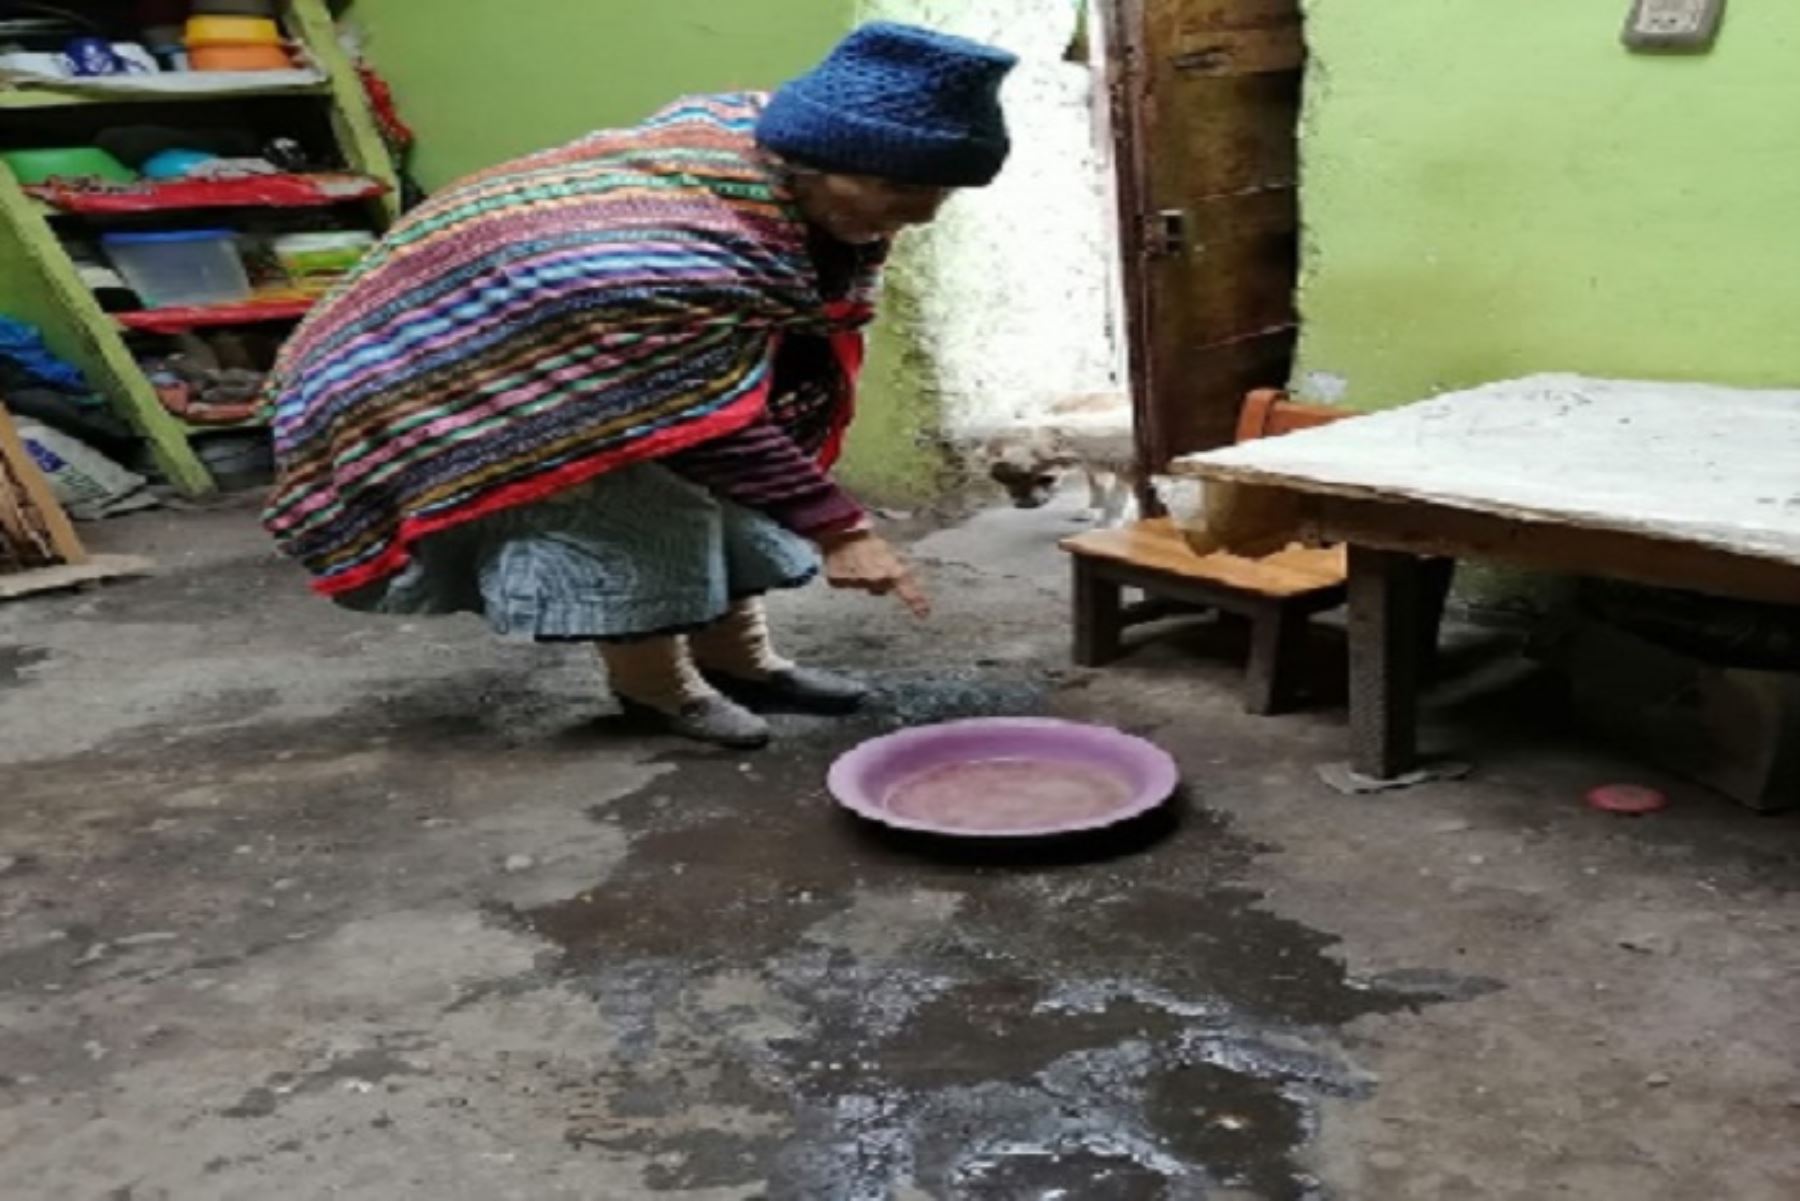 Lluvias intensas dejan 203 viviendas afectadas y daños en escuela de comunidad de Pasco